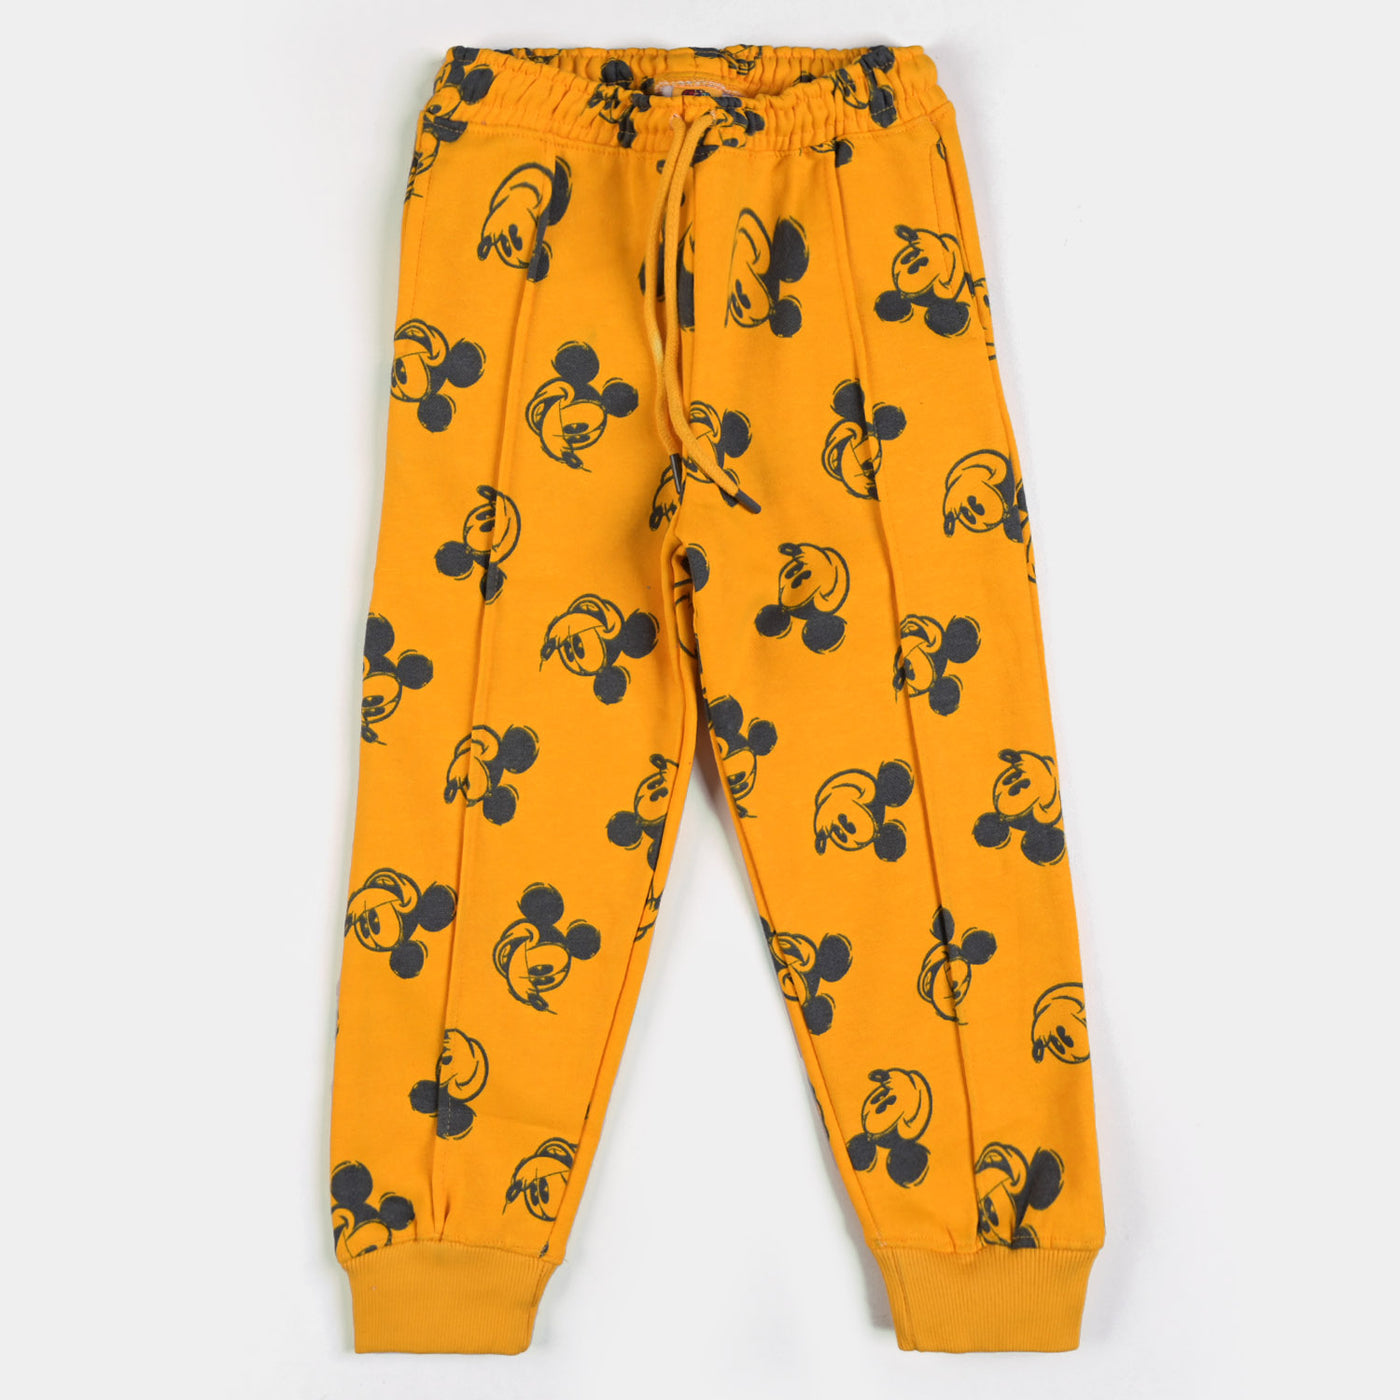 Boys Fleece 2 Piece Suit Mickey-Citrus